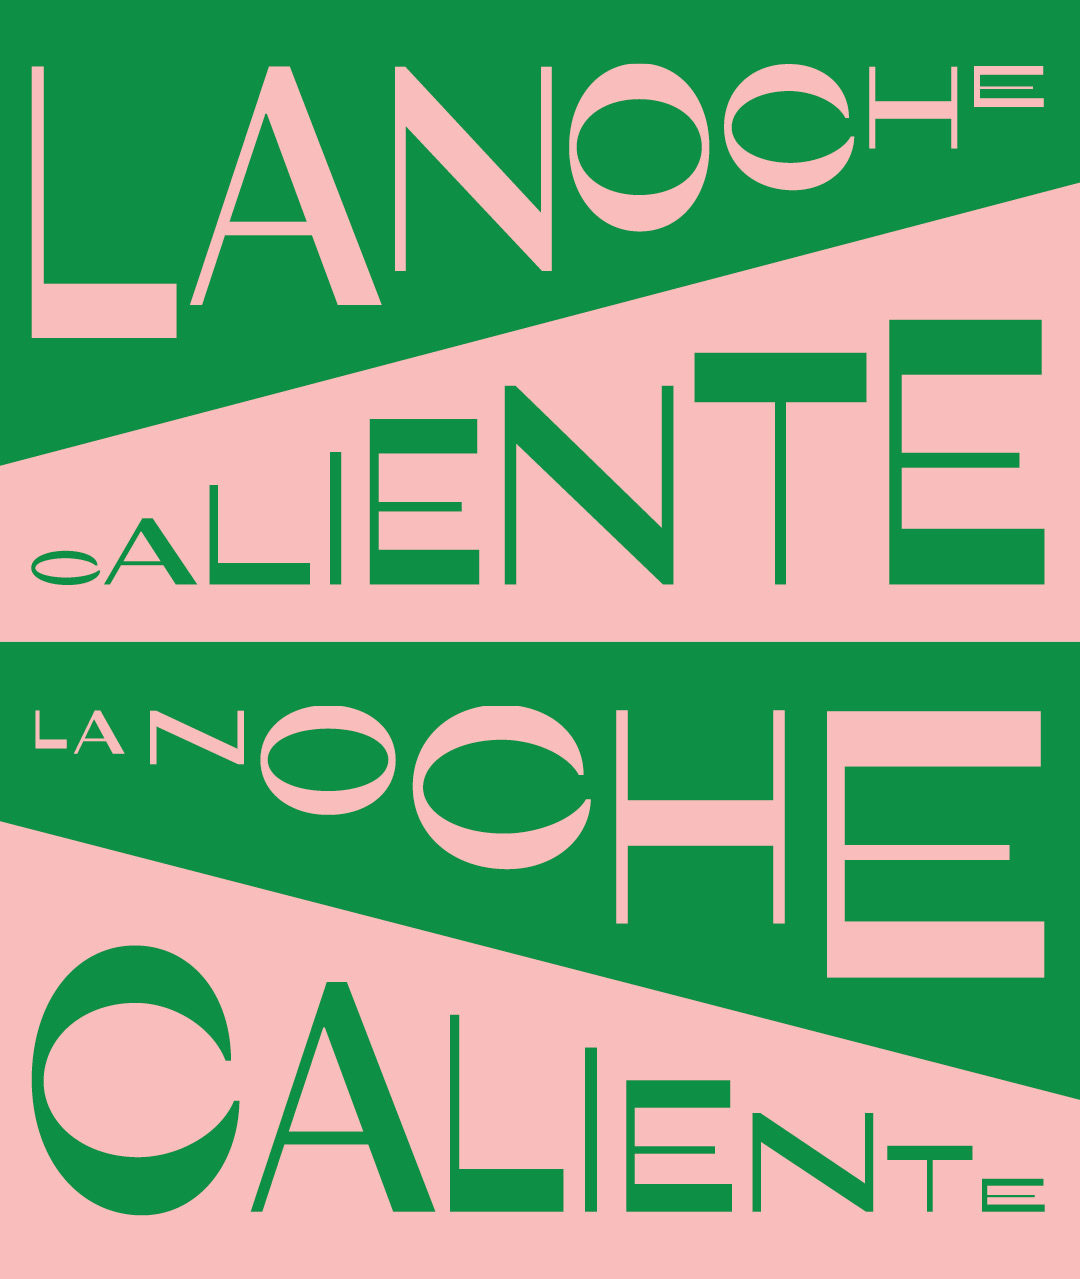 NOLA x NOLA and Three Keys Presents: La Noche Caliente w/ Muevelo promo